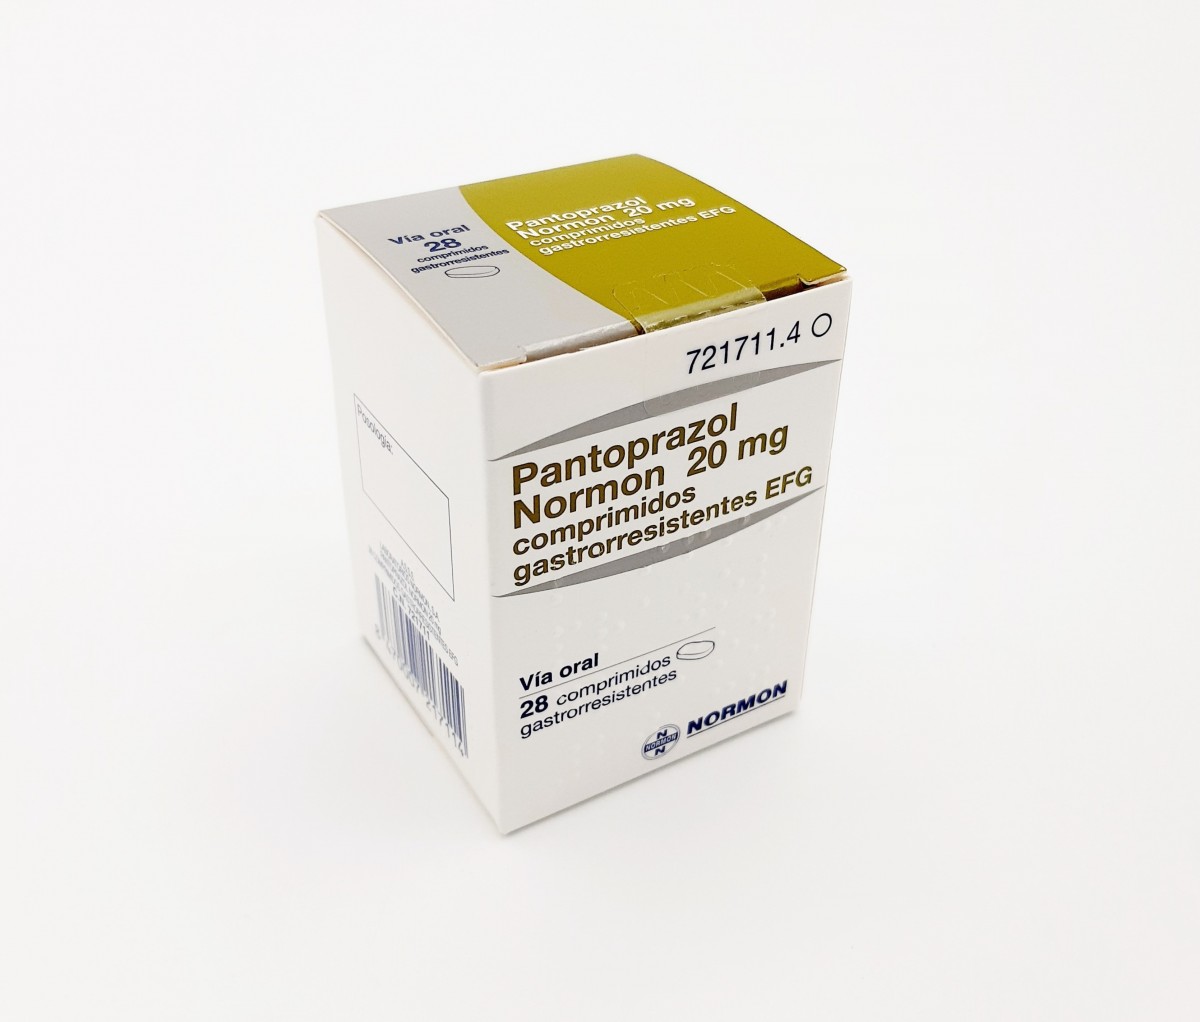 PANTOPRAZOL NORMON 20 mg COMPRIMIDOS GASTRORRESISTENTES EFG, 56 comprimidos (Blister) fotografía del envase.